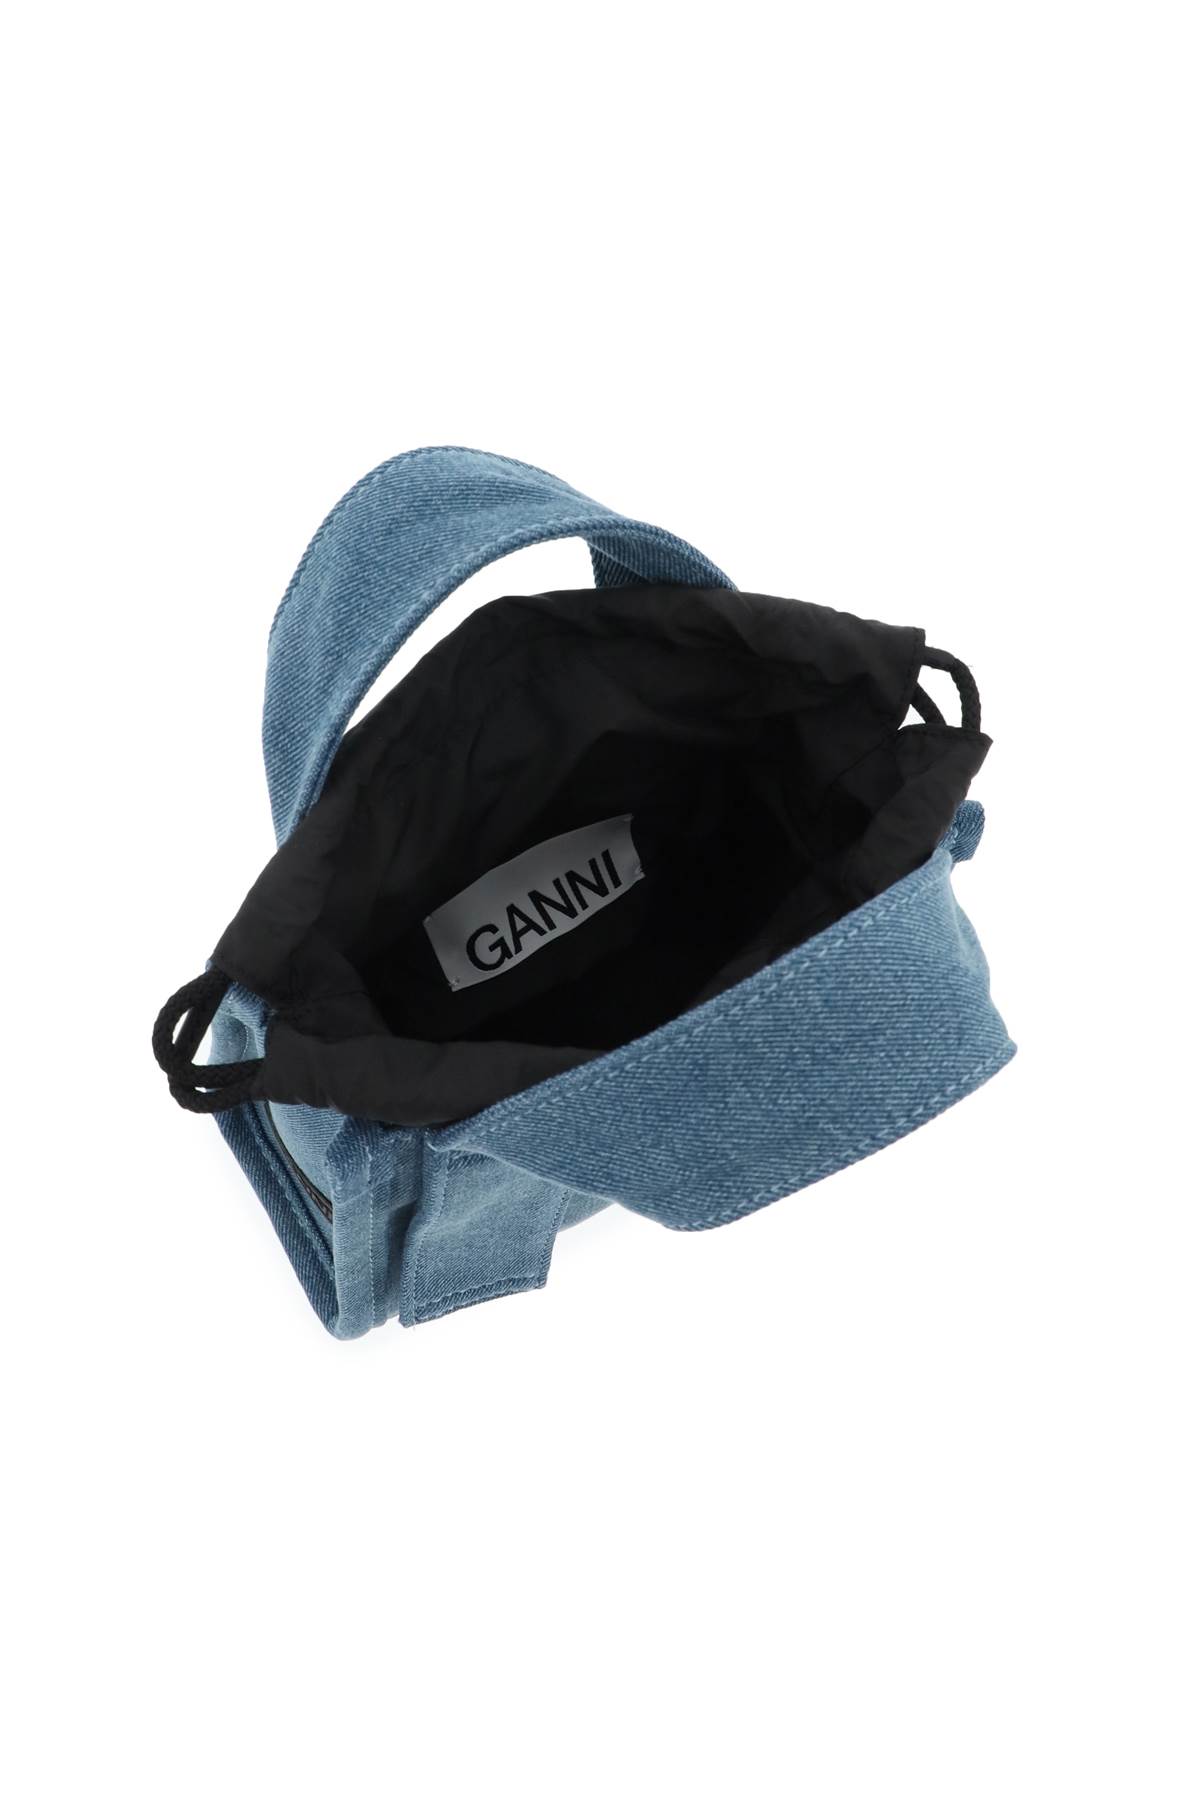 Shop Ganni Denim Tech Mini Tote Bag In Denim (blue)